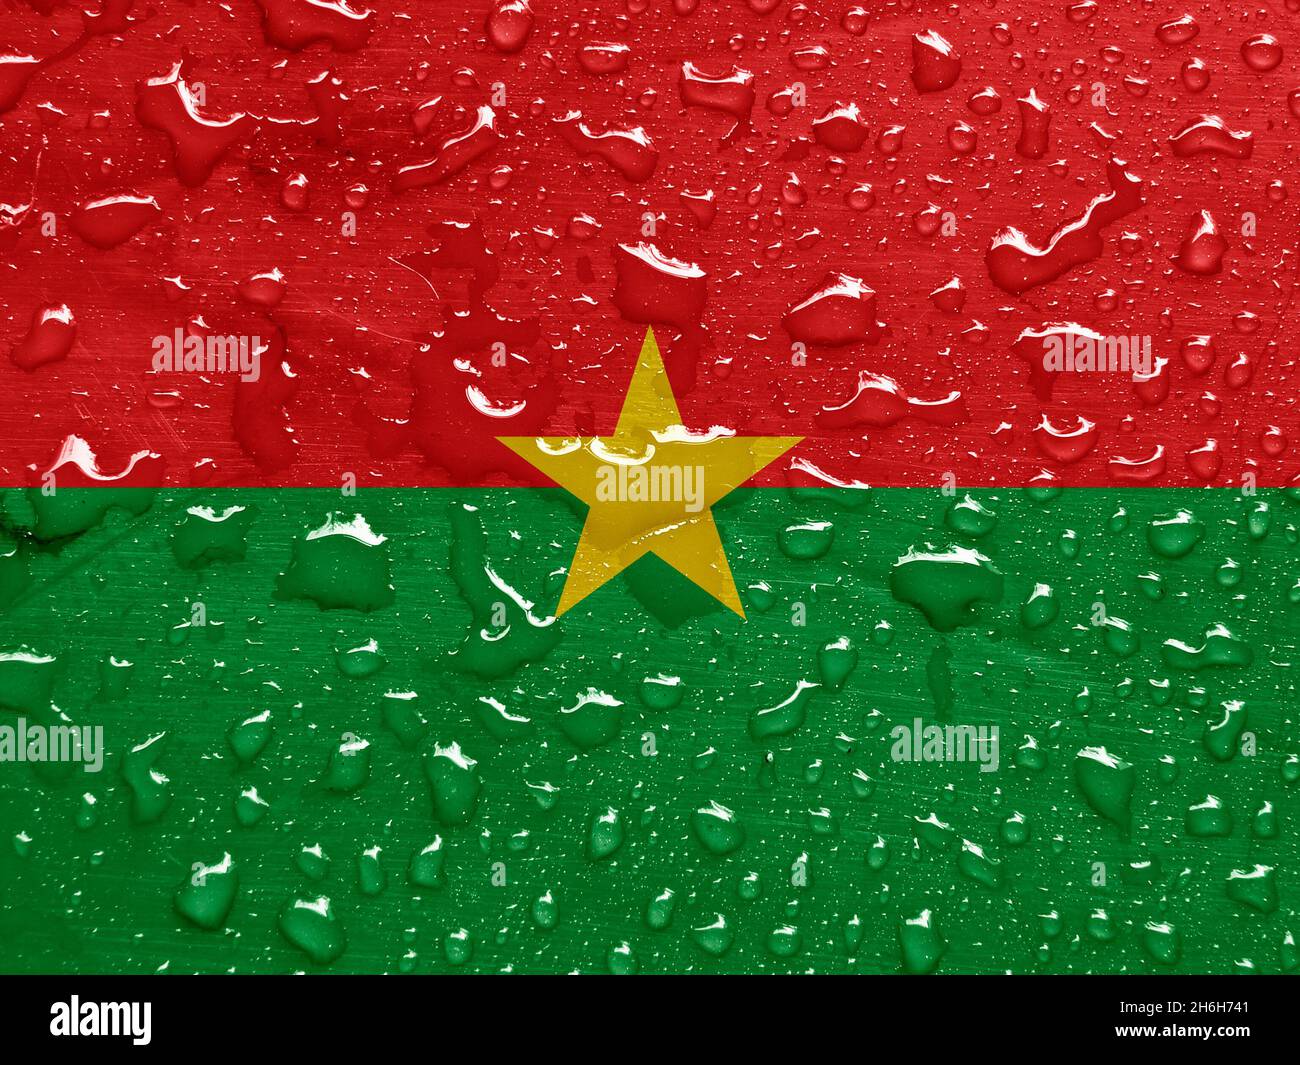 Drapeau du Burkina Faso avec gouttes de pluie Banque D'Images